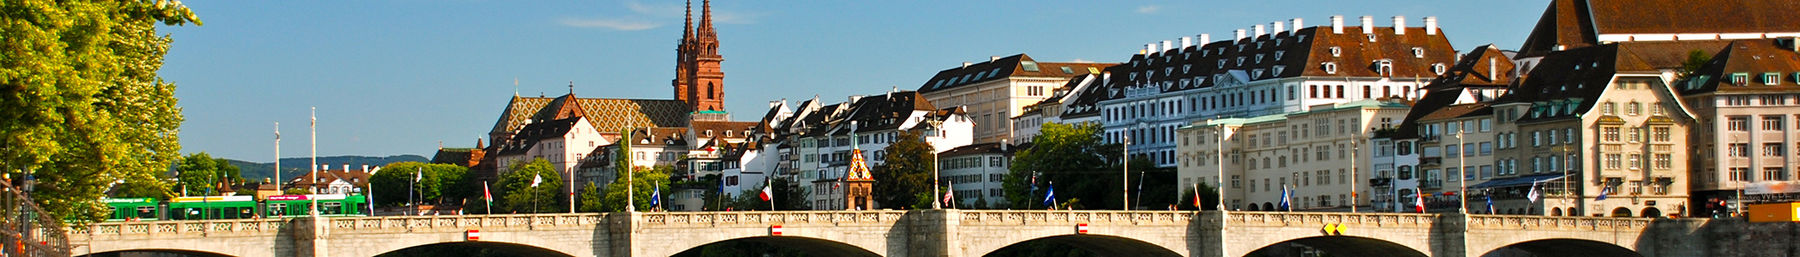 Basel banner.jpg